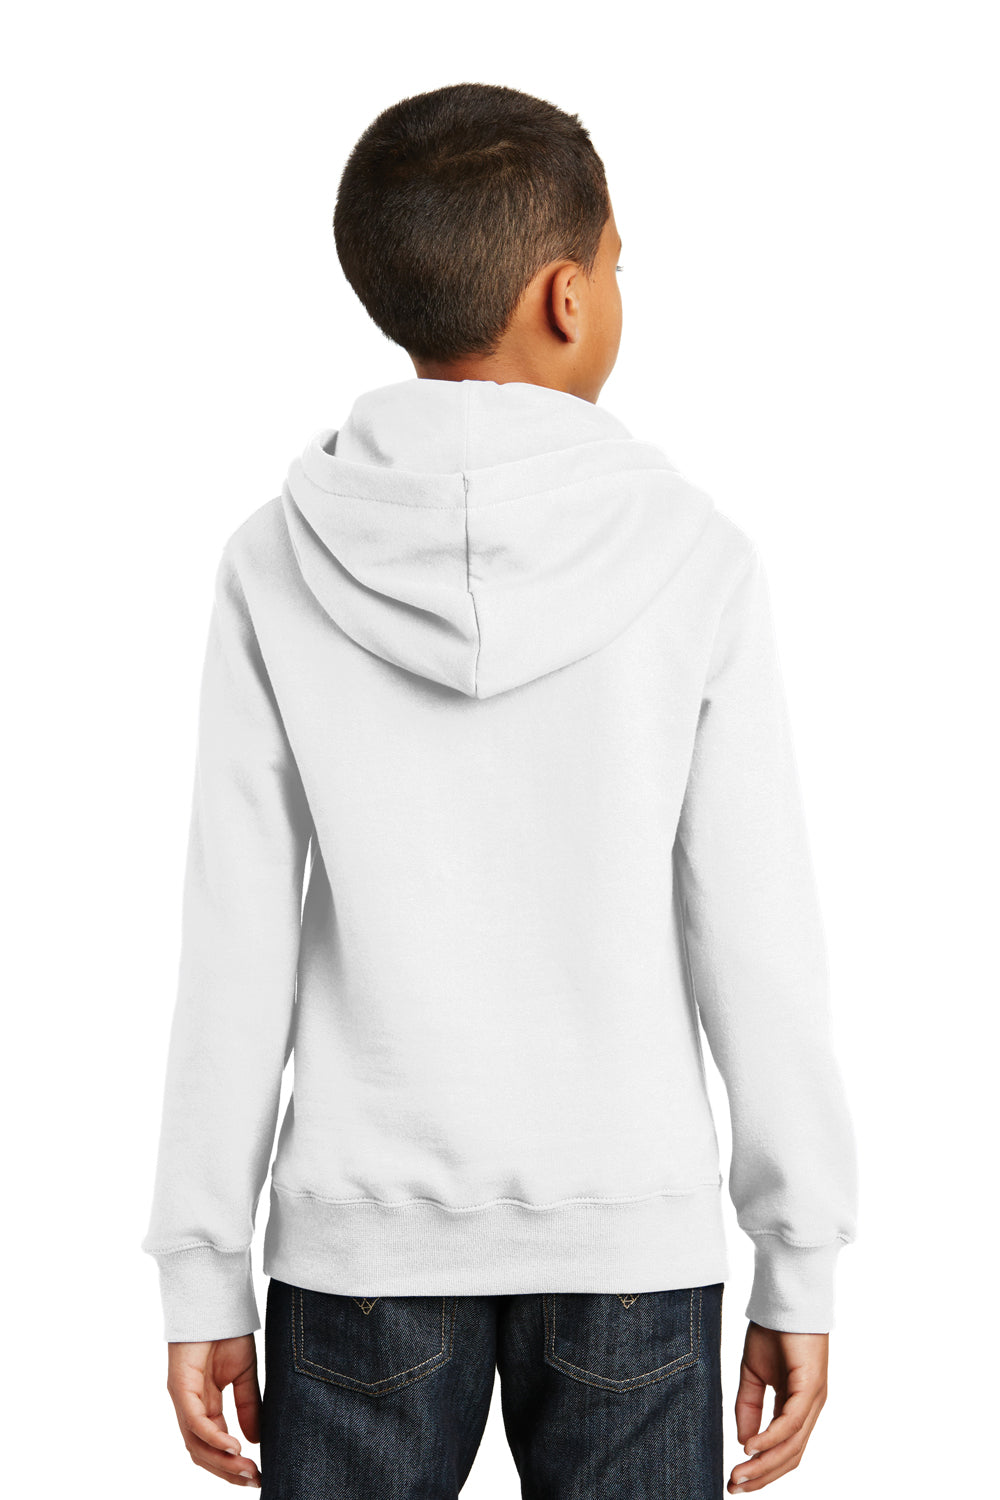 Port & Company PC850YH Youth Fan Favorite Fleece Hooded Sweatshirt Hoodie White Back